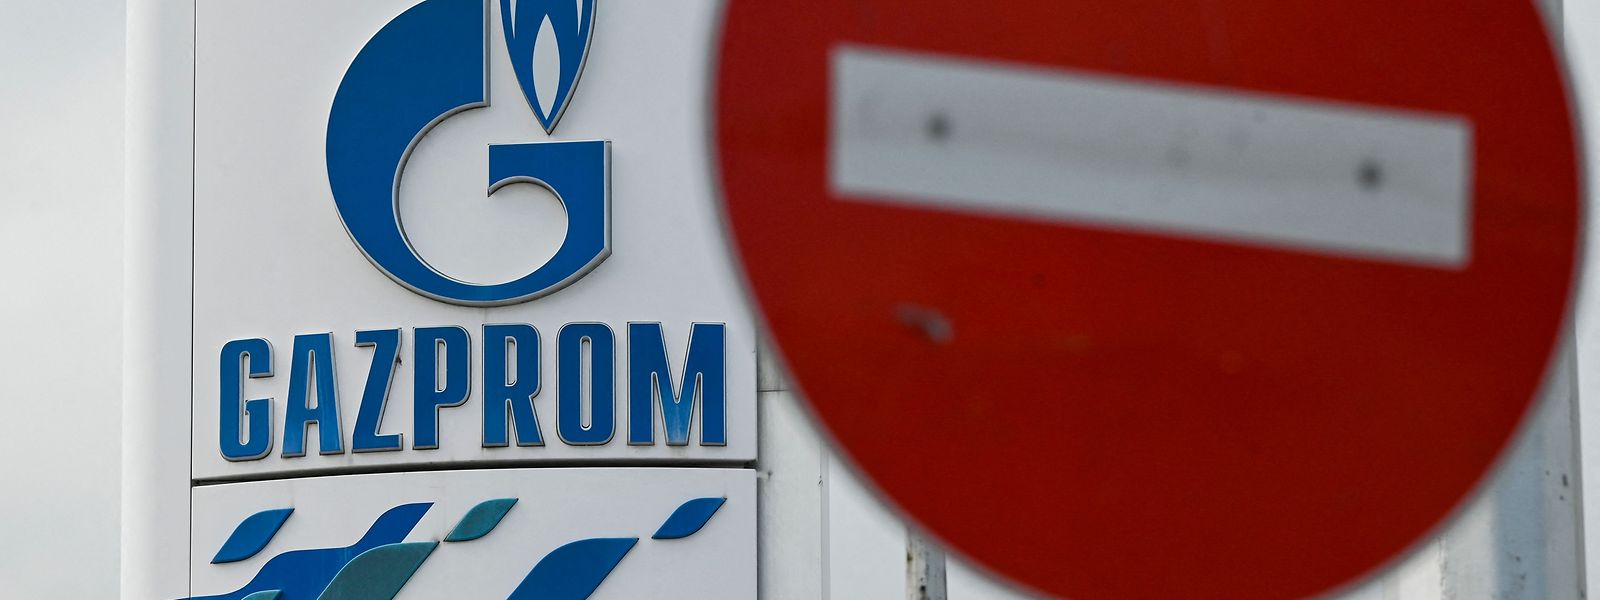 In der Republik Moldau fürchtet man, dass Gazprom auf Anweisung Moskaus früher oder später den Gashahn komplett zudrehen wird, um innenpolitische Unruhen zu provozieren.